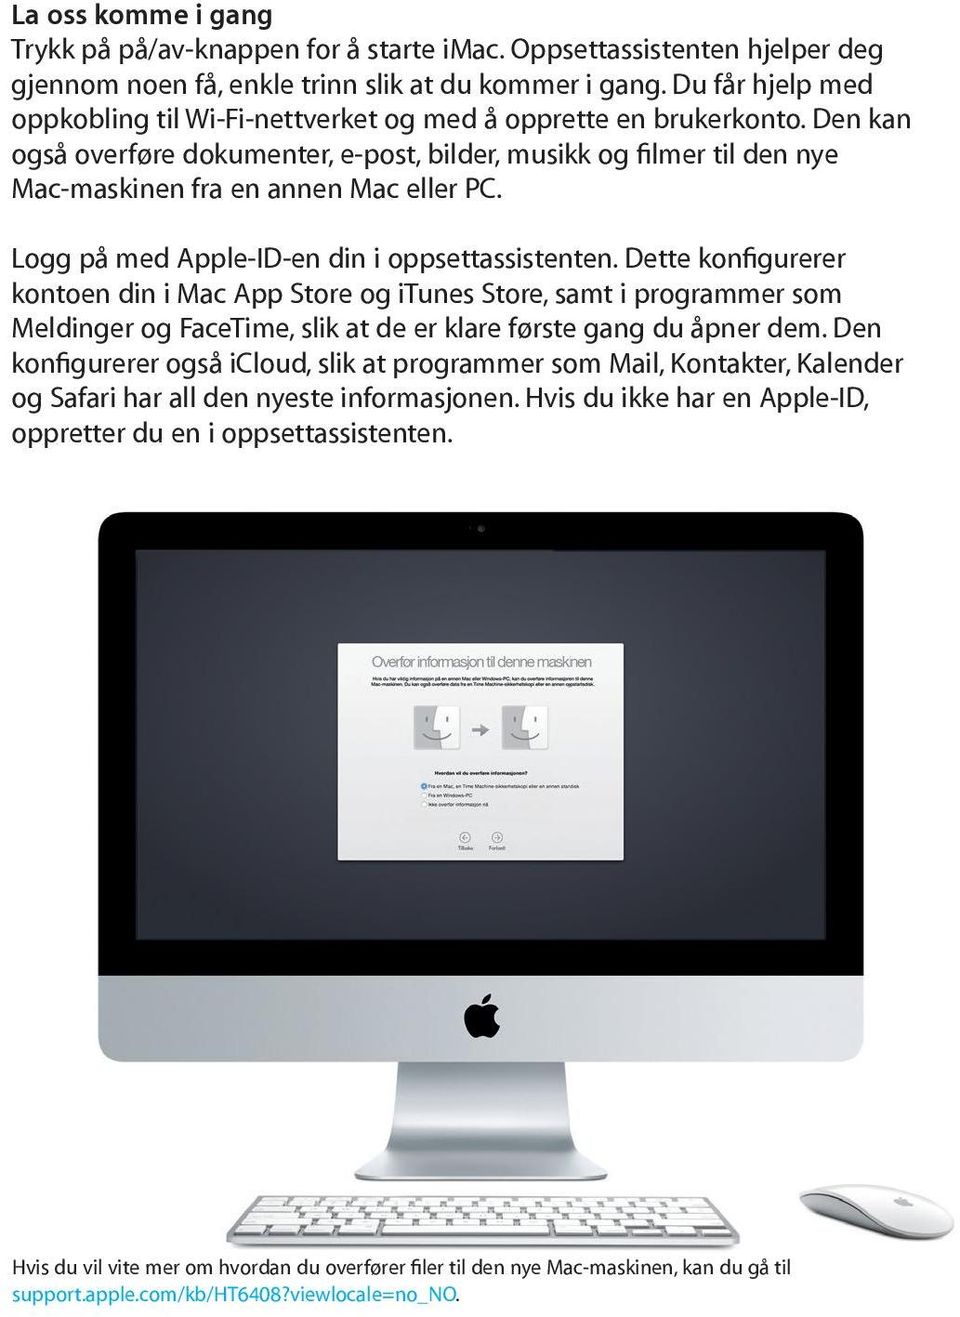 Den kan også overføre dokumenter, e-post, bilder, musikk og filmer til den nye Mac-maskinen fra en annen Mac eller PC. Logg på med Apple-ID-en din i oppsettassistenten.